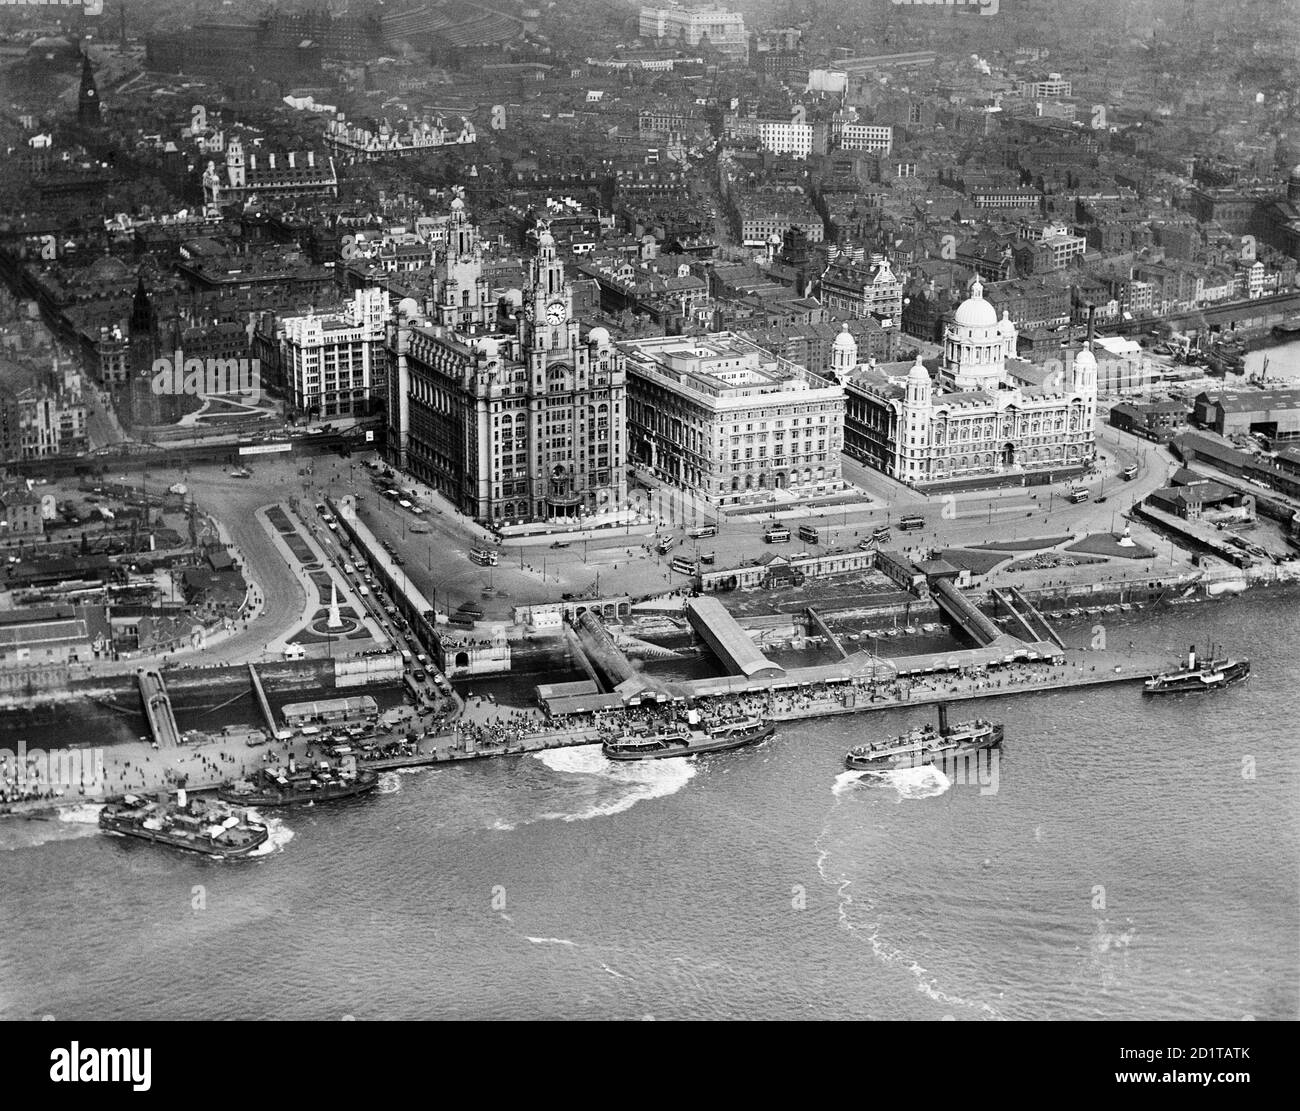 LIVERPOOL, Merseyside. Vista aerea del Liverpool Pier Head con numerosi traghetti e piccole imbarcazioni. Fotografato nel 1920. Aerofilms Collection (vedi link). Foto Stock